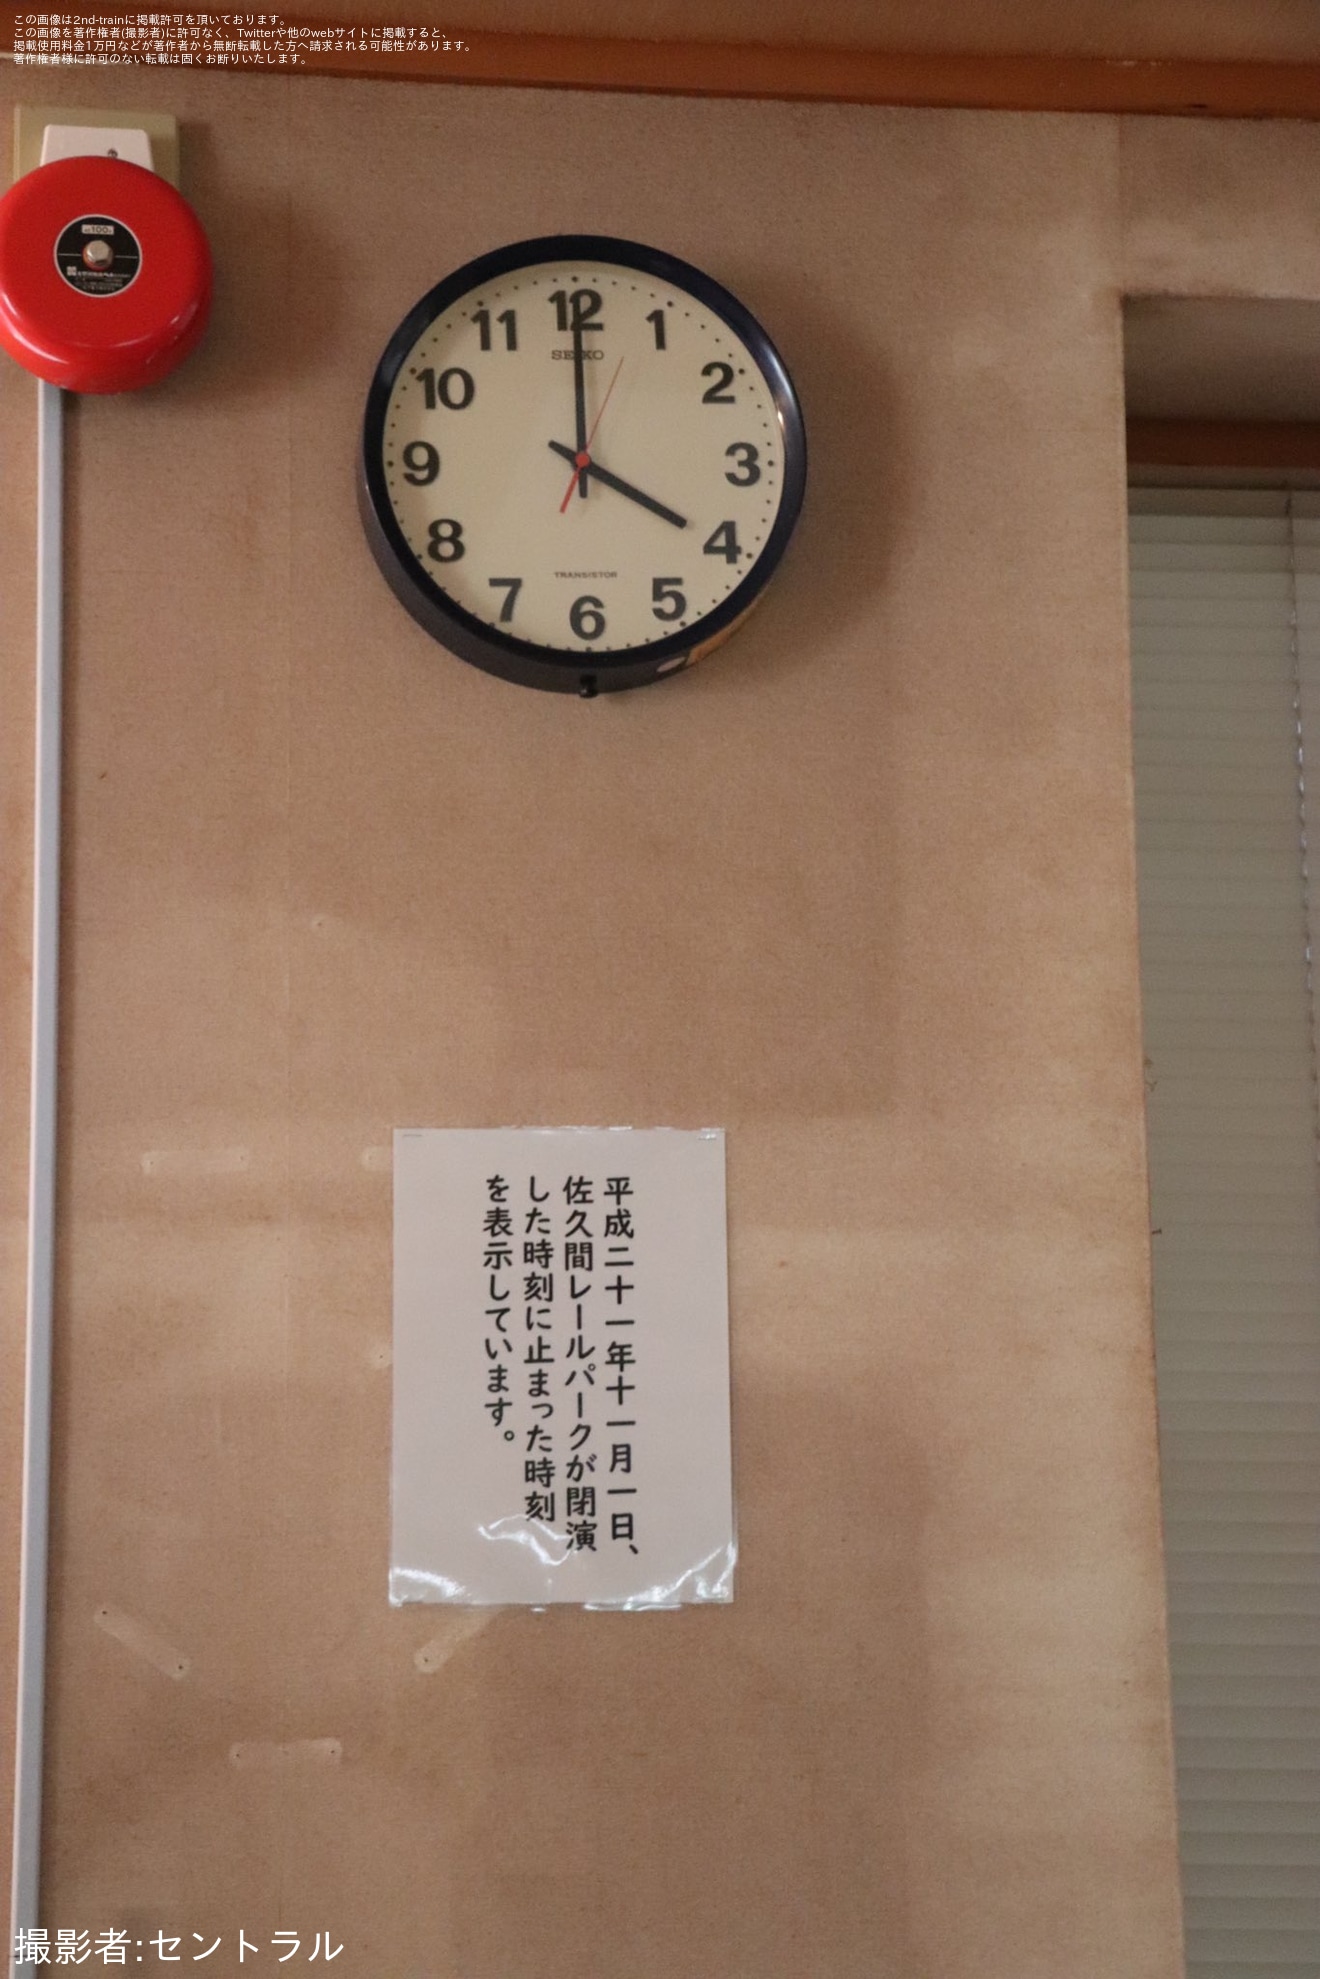 【JR海】急行「ディスカバー飯田線号」が臨時運行(202311)の拡大写真